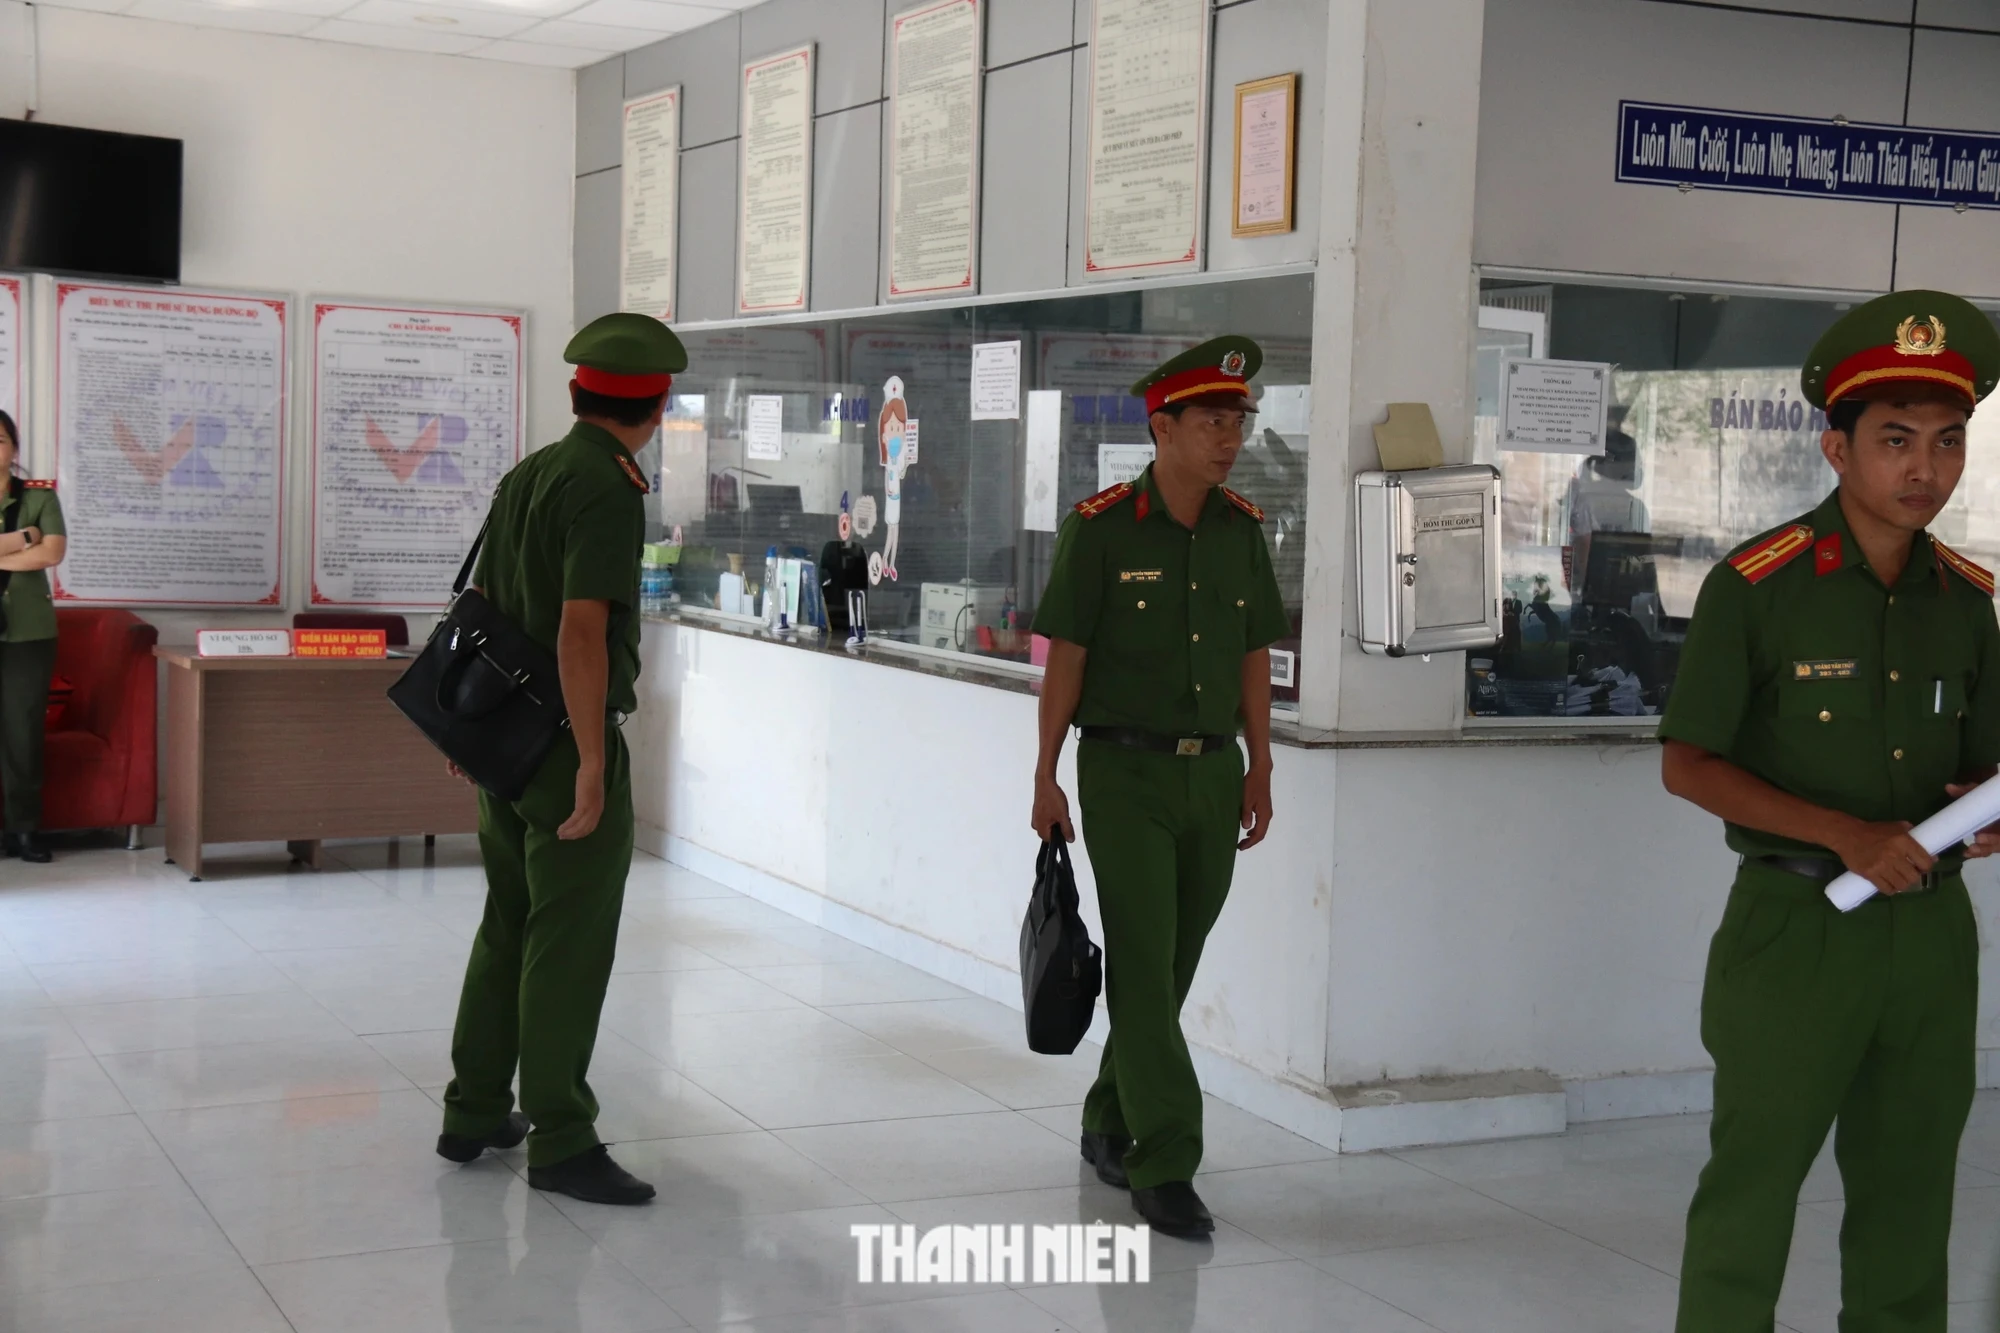 Bình Thuận: Bắt giam phó giám đốc, khám xét Trung tâm đăng kiểm 86-02D